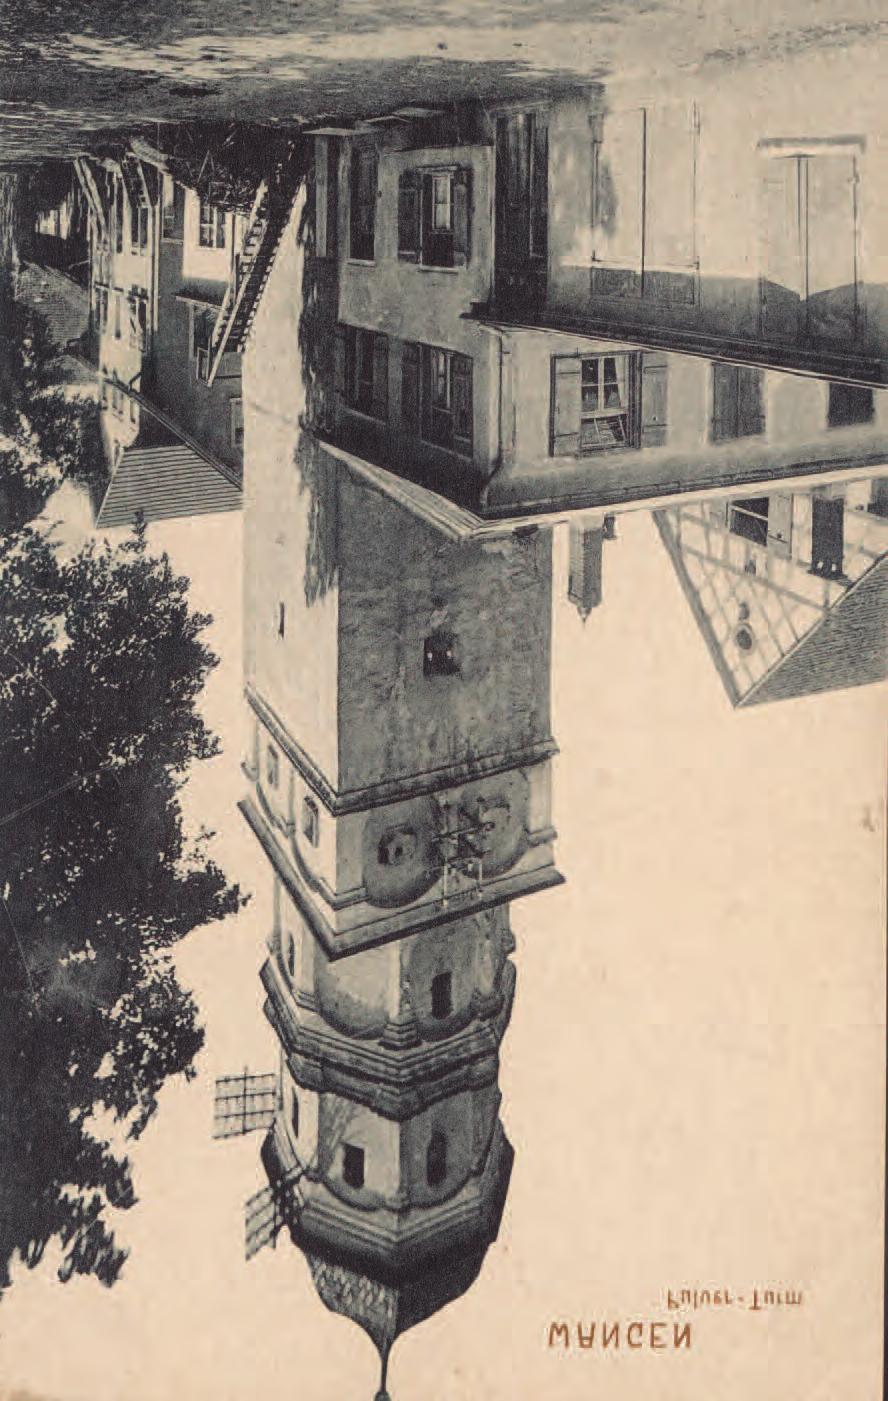 Seite 8 Romantisches Areal um den Pulverturm. Kolorierte Postkarte, um 1910.